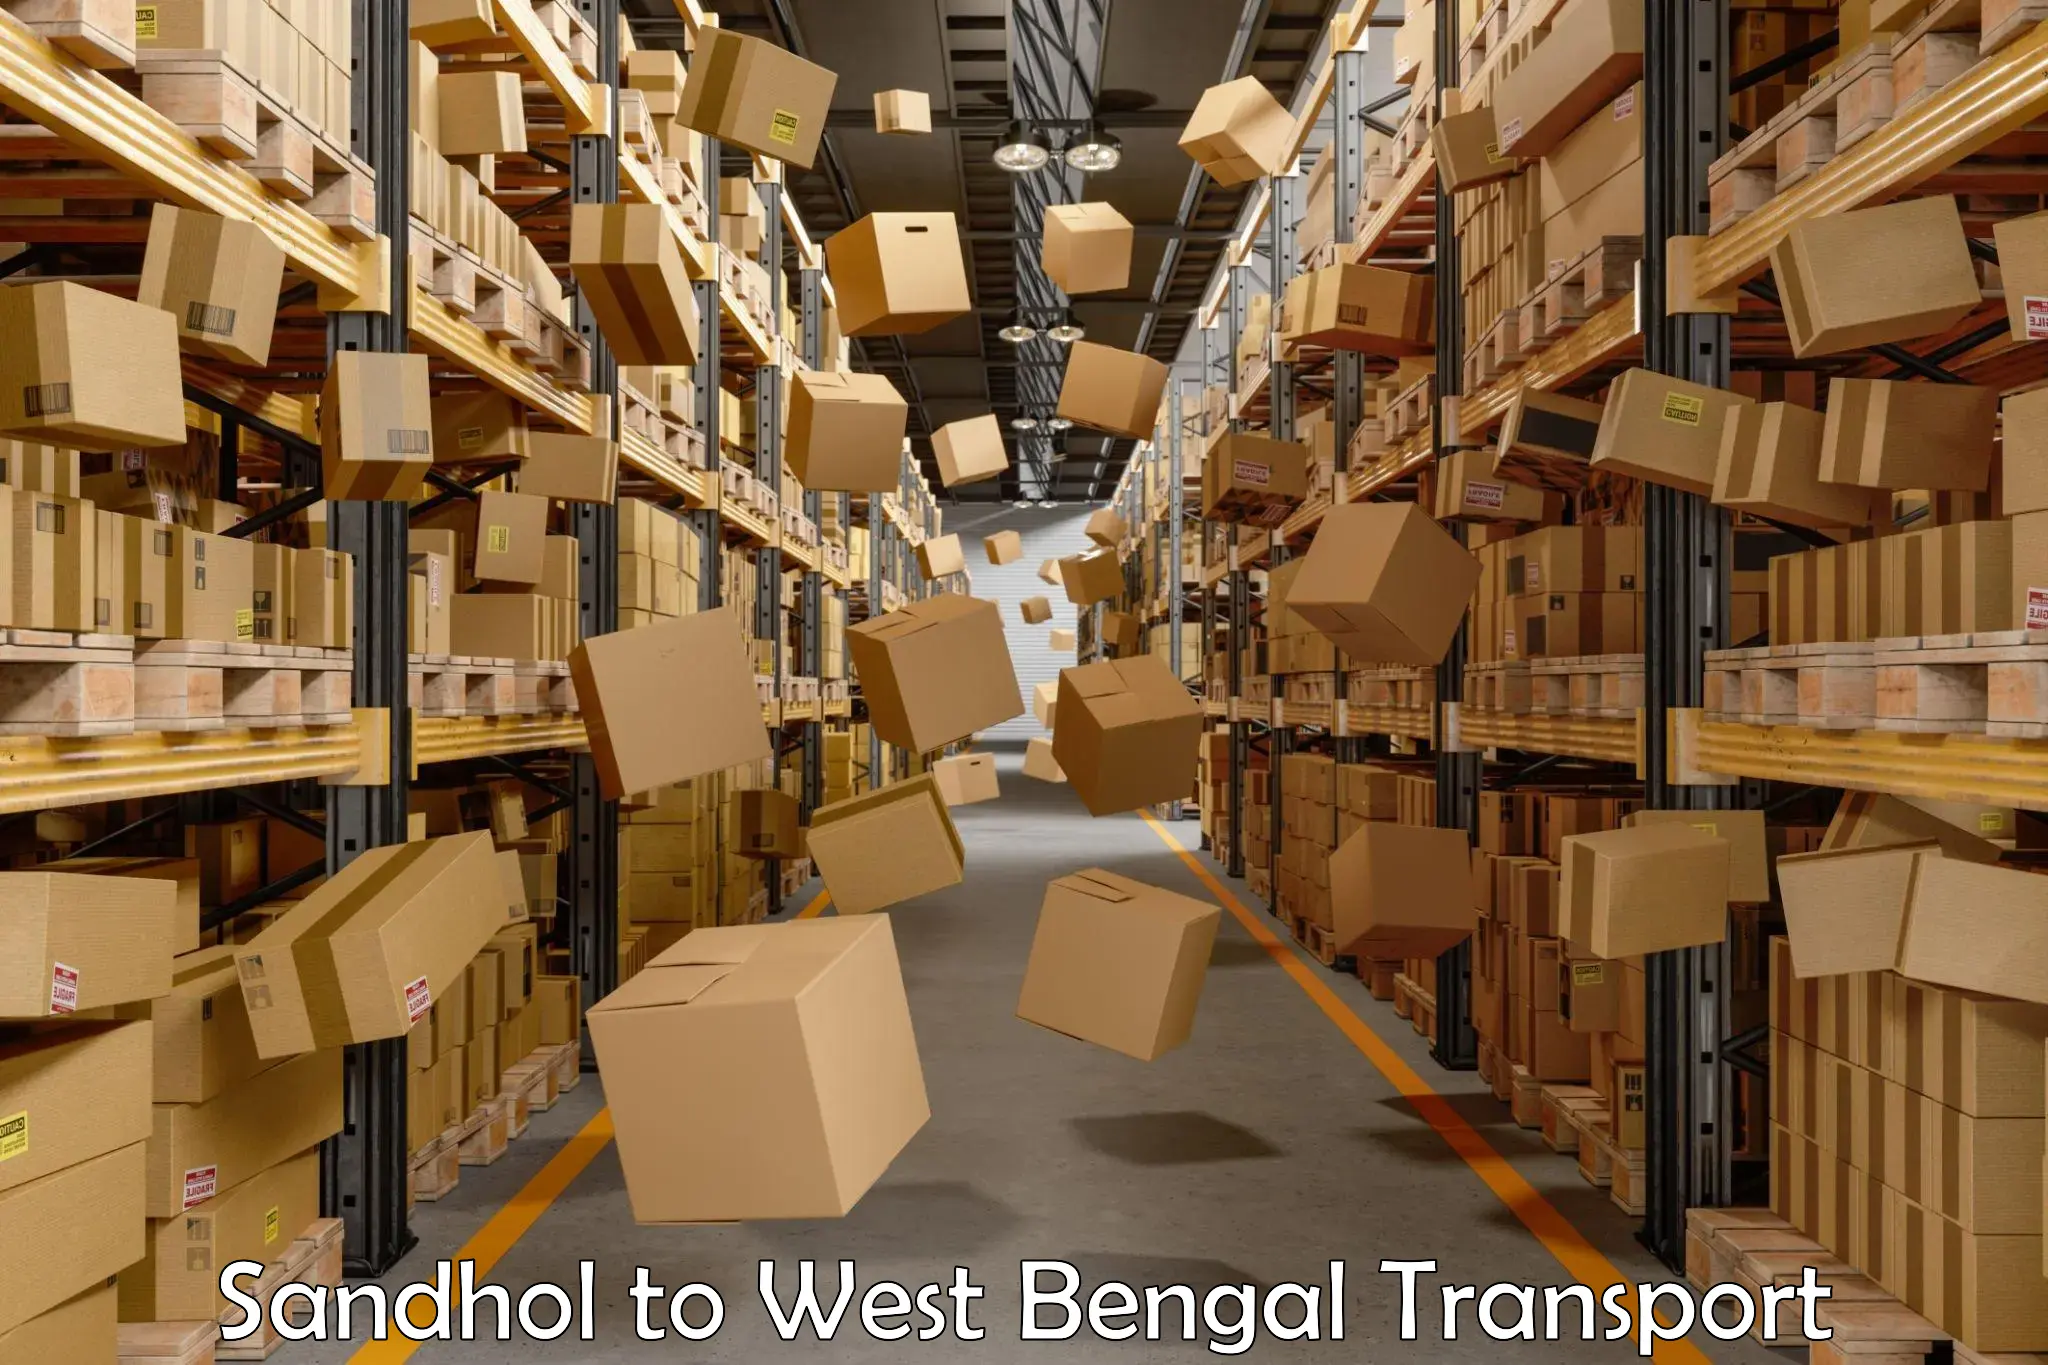 Online transport service Sandhol to West Bengal